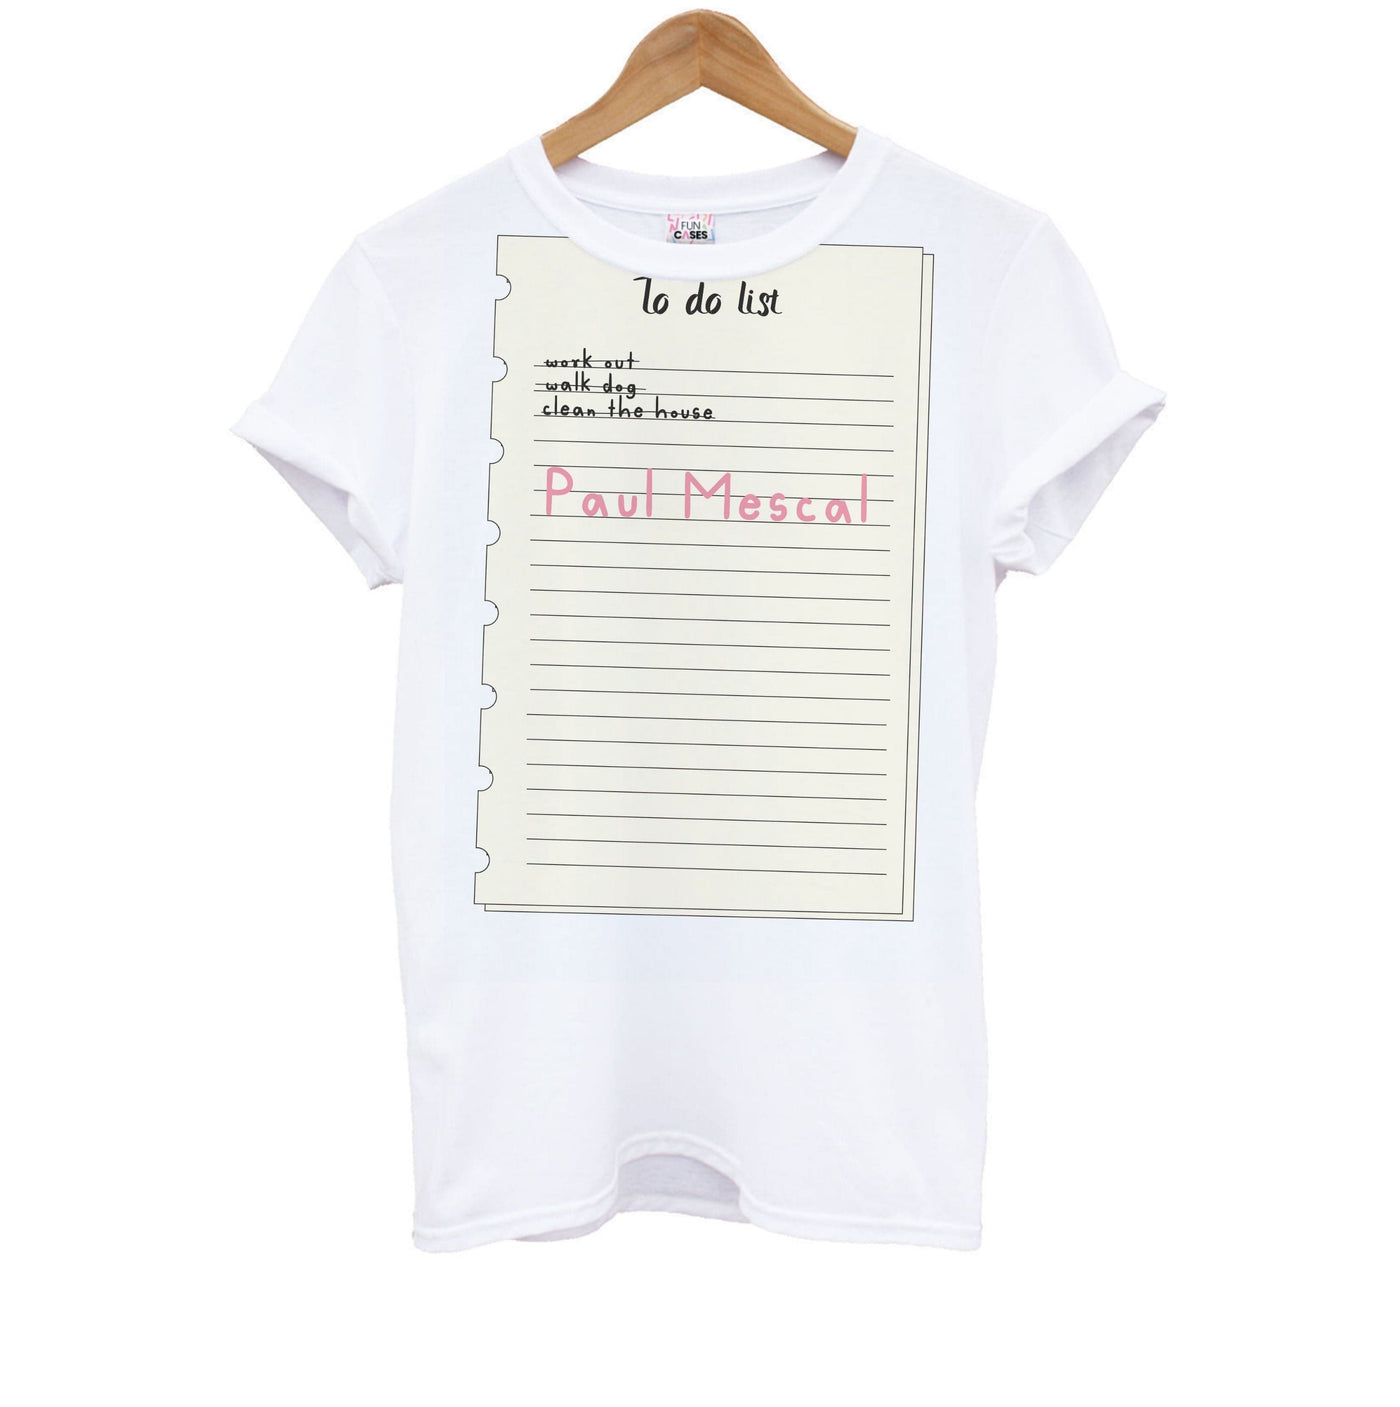 To Do List - Paul Mescal Kids T-Shirt